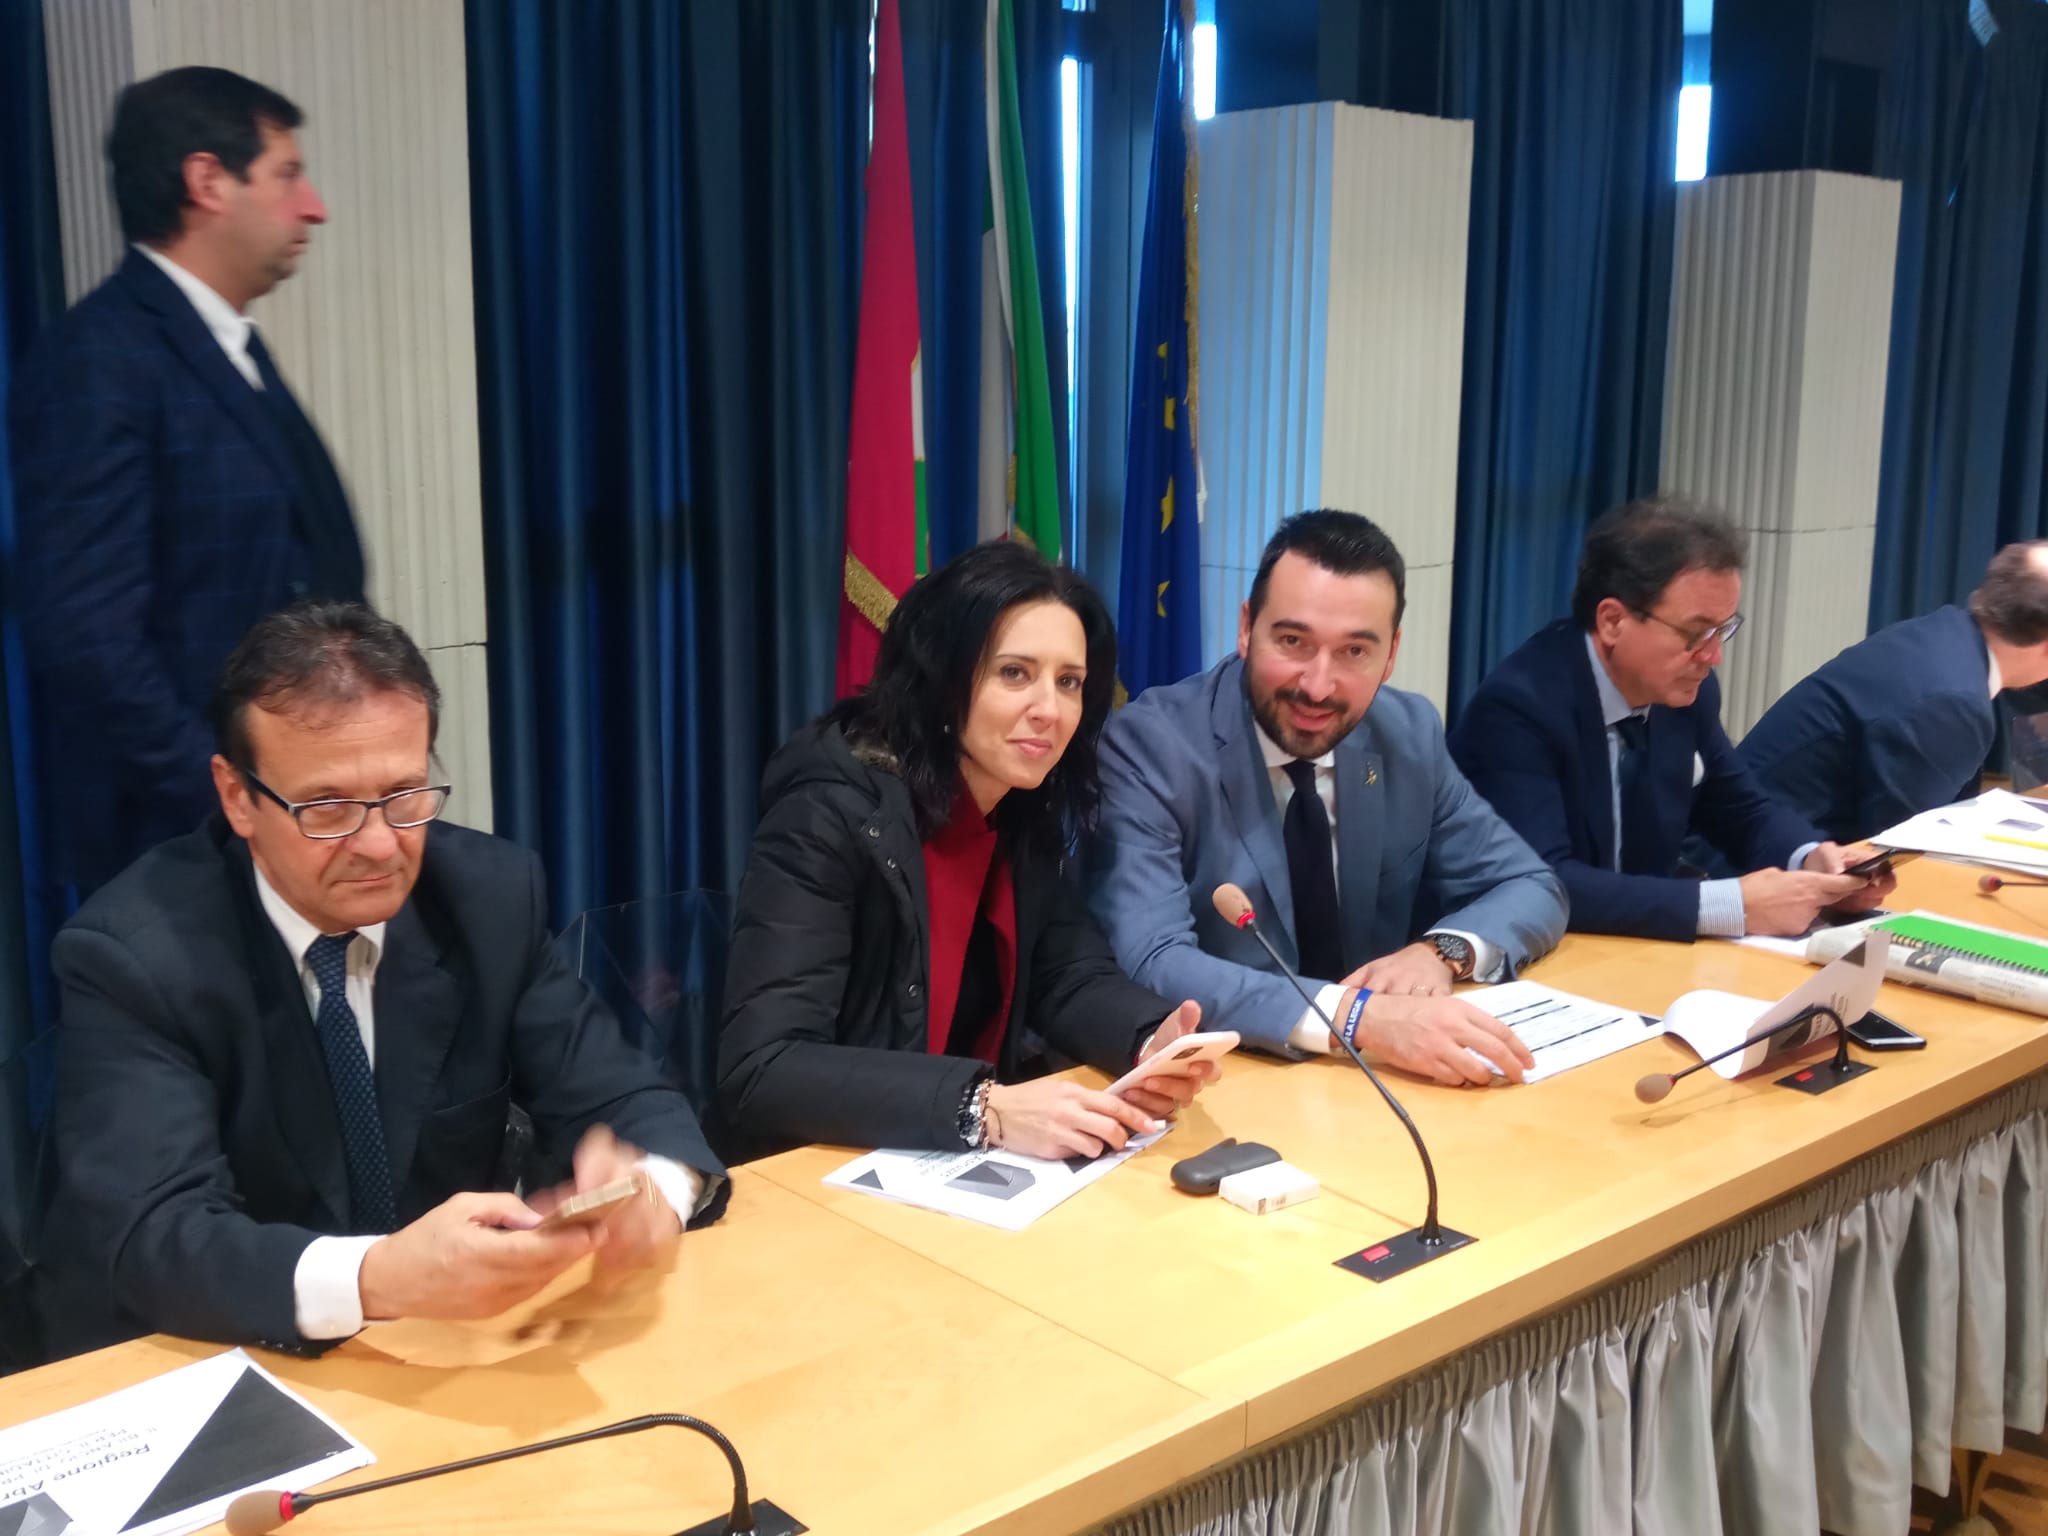 Dichiarazioni del consigliere regionale Sabrina Bocchino (Lega), in margine all’approvazione del Bilancio 2020 della Regione Abruzzo.